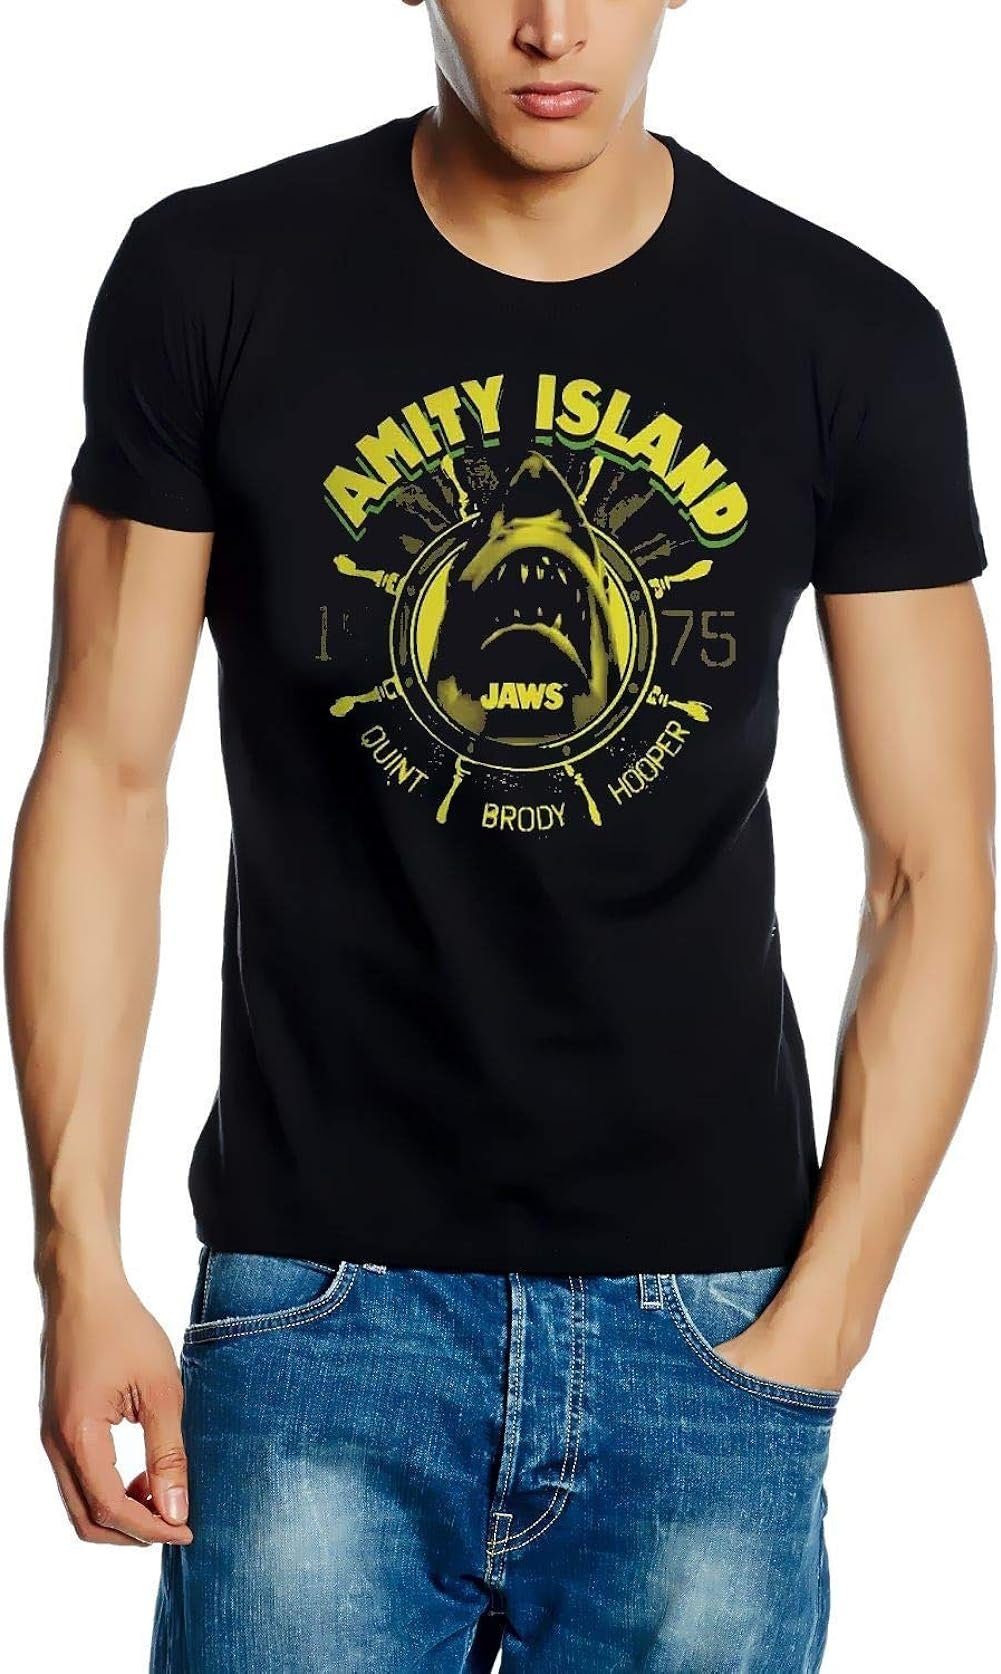 Der Weiße Hai Print-Shirt JAWS T-Shirt der weiße Hai AMITY ISLAND schwarz s M L XL XXL